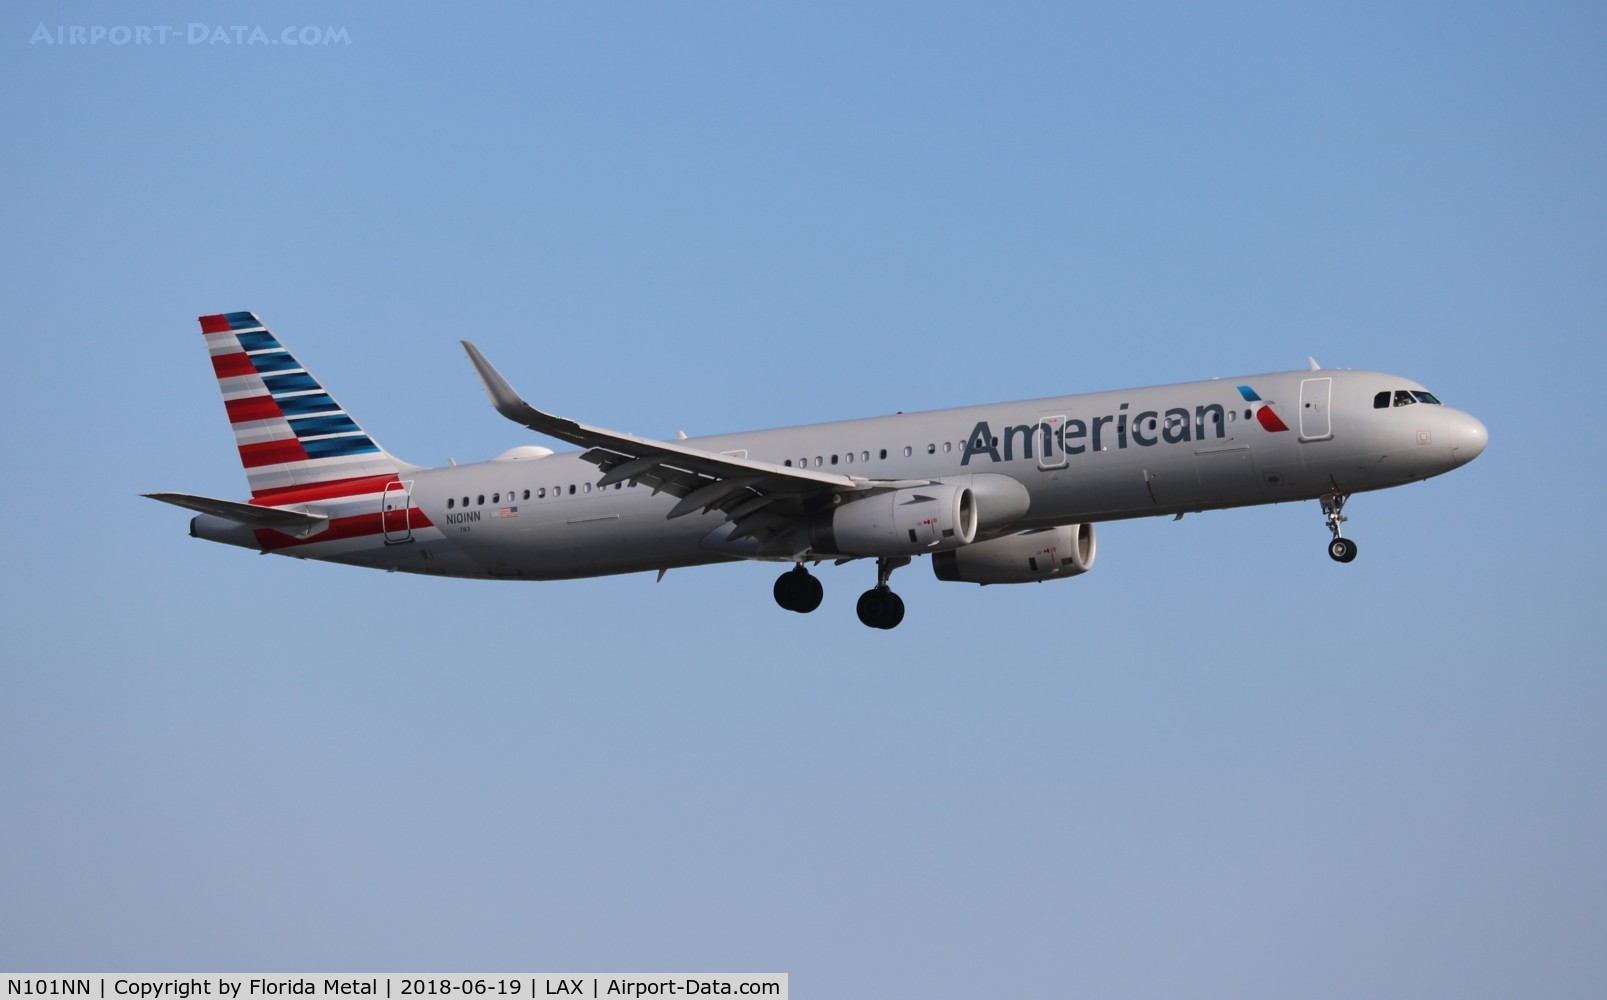 N101NN, 2013 Airbus A321-231 C/N 5834, American